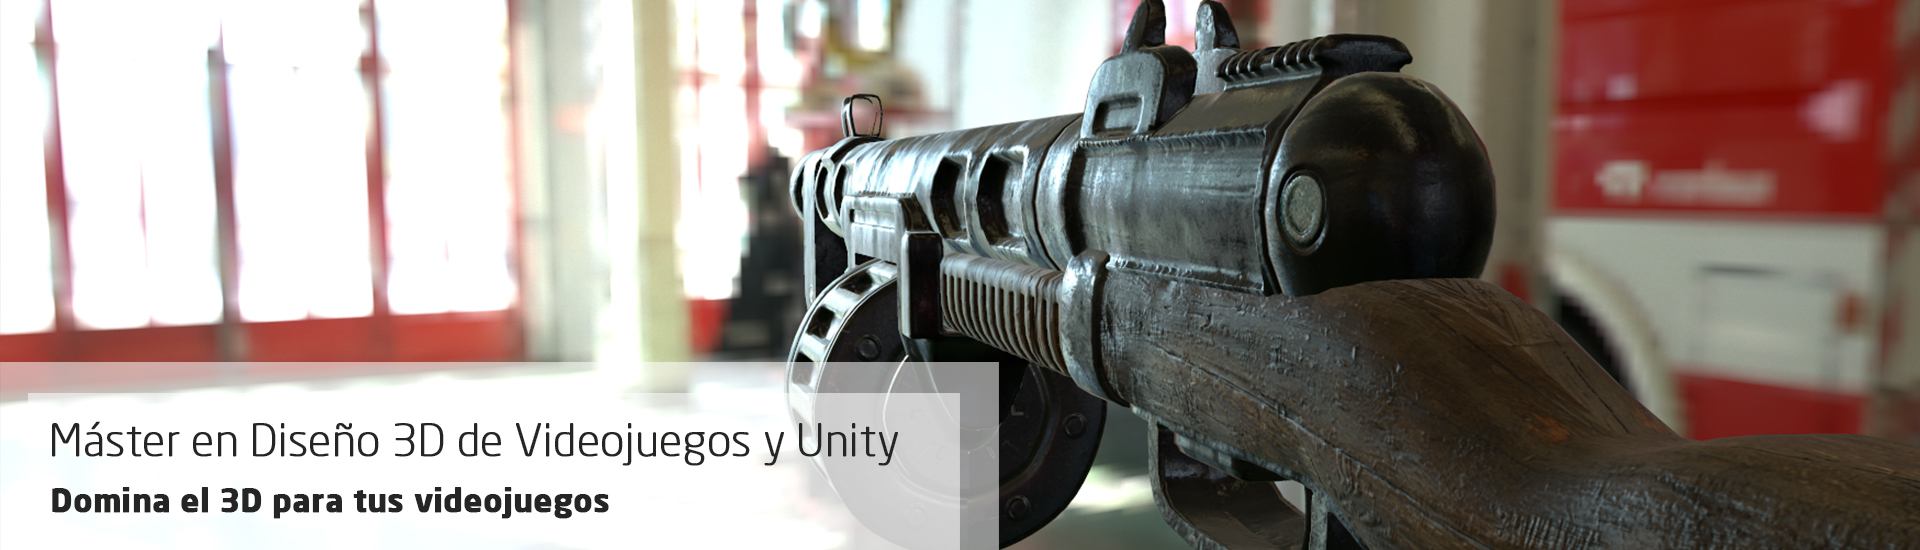 Máster en Diseño 3D de Videojuegos y Unity. Domina el 3D para la creación de videojuegos.